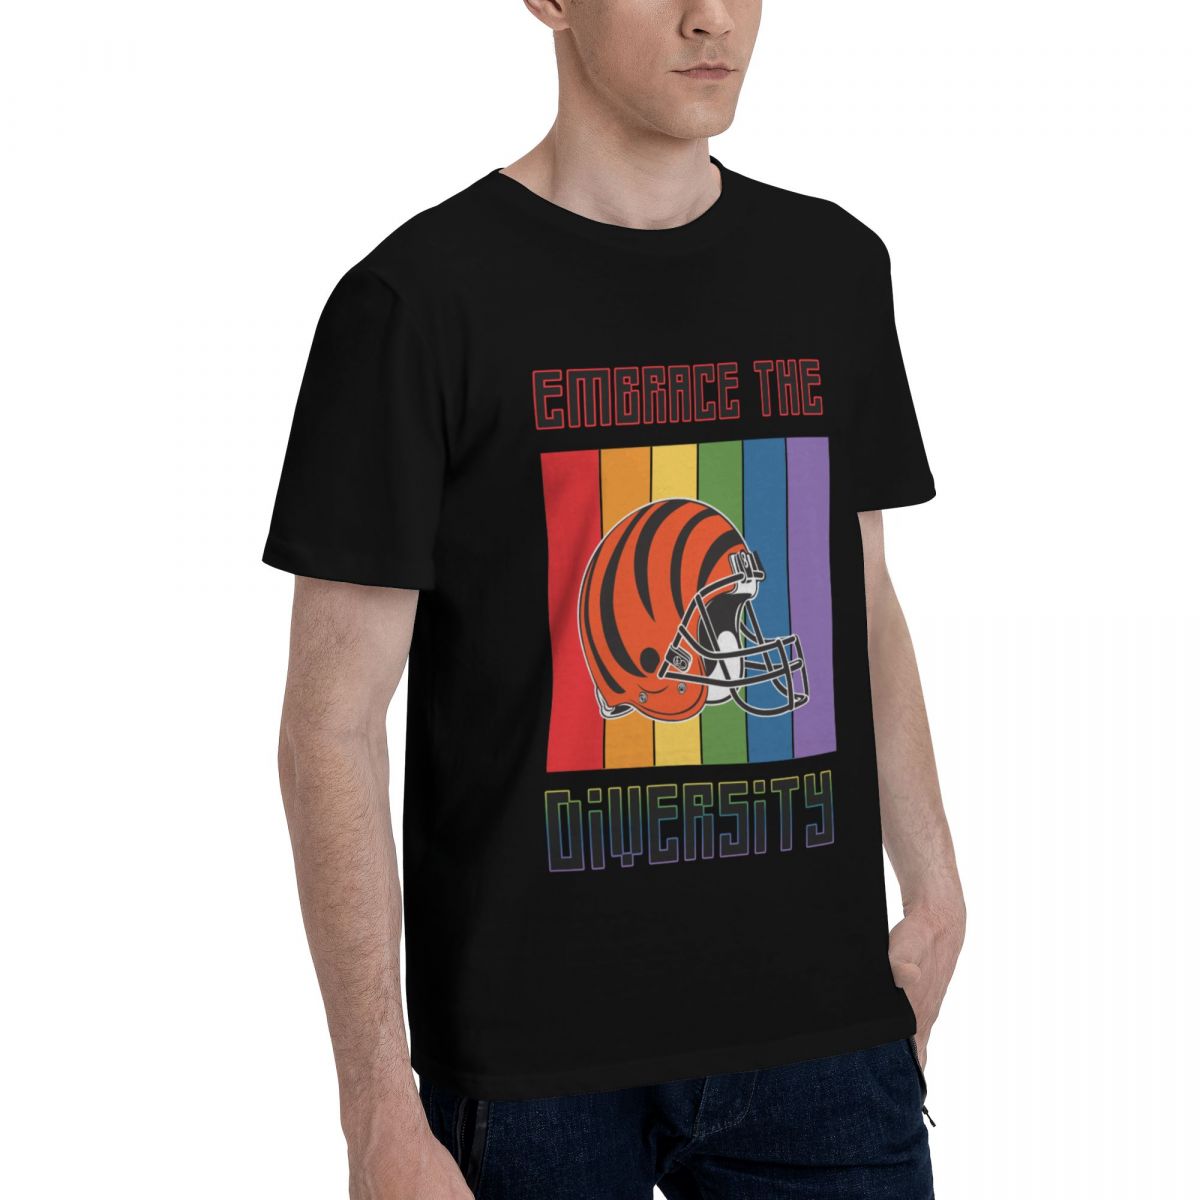 Cincinnati Bengals Embrace The Diversity Printed Men's Cotton T-Shirt